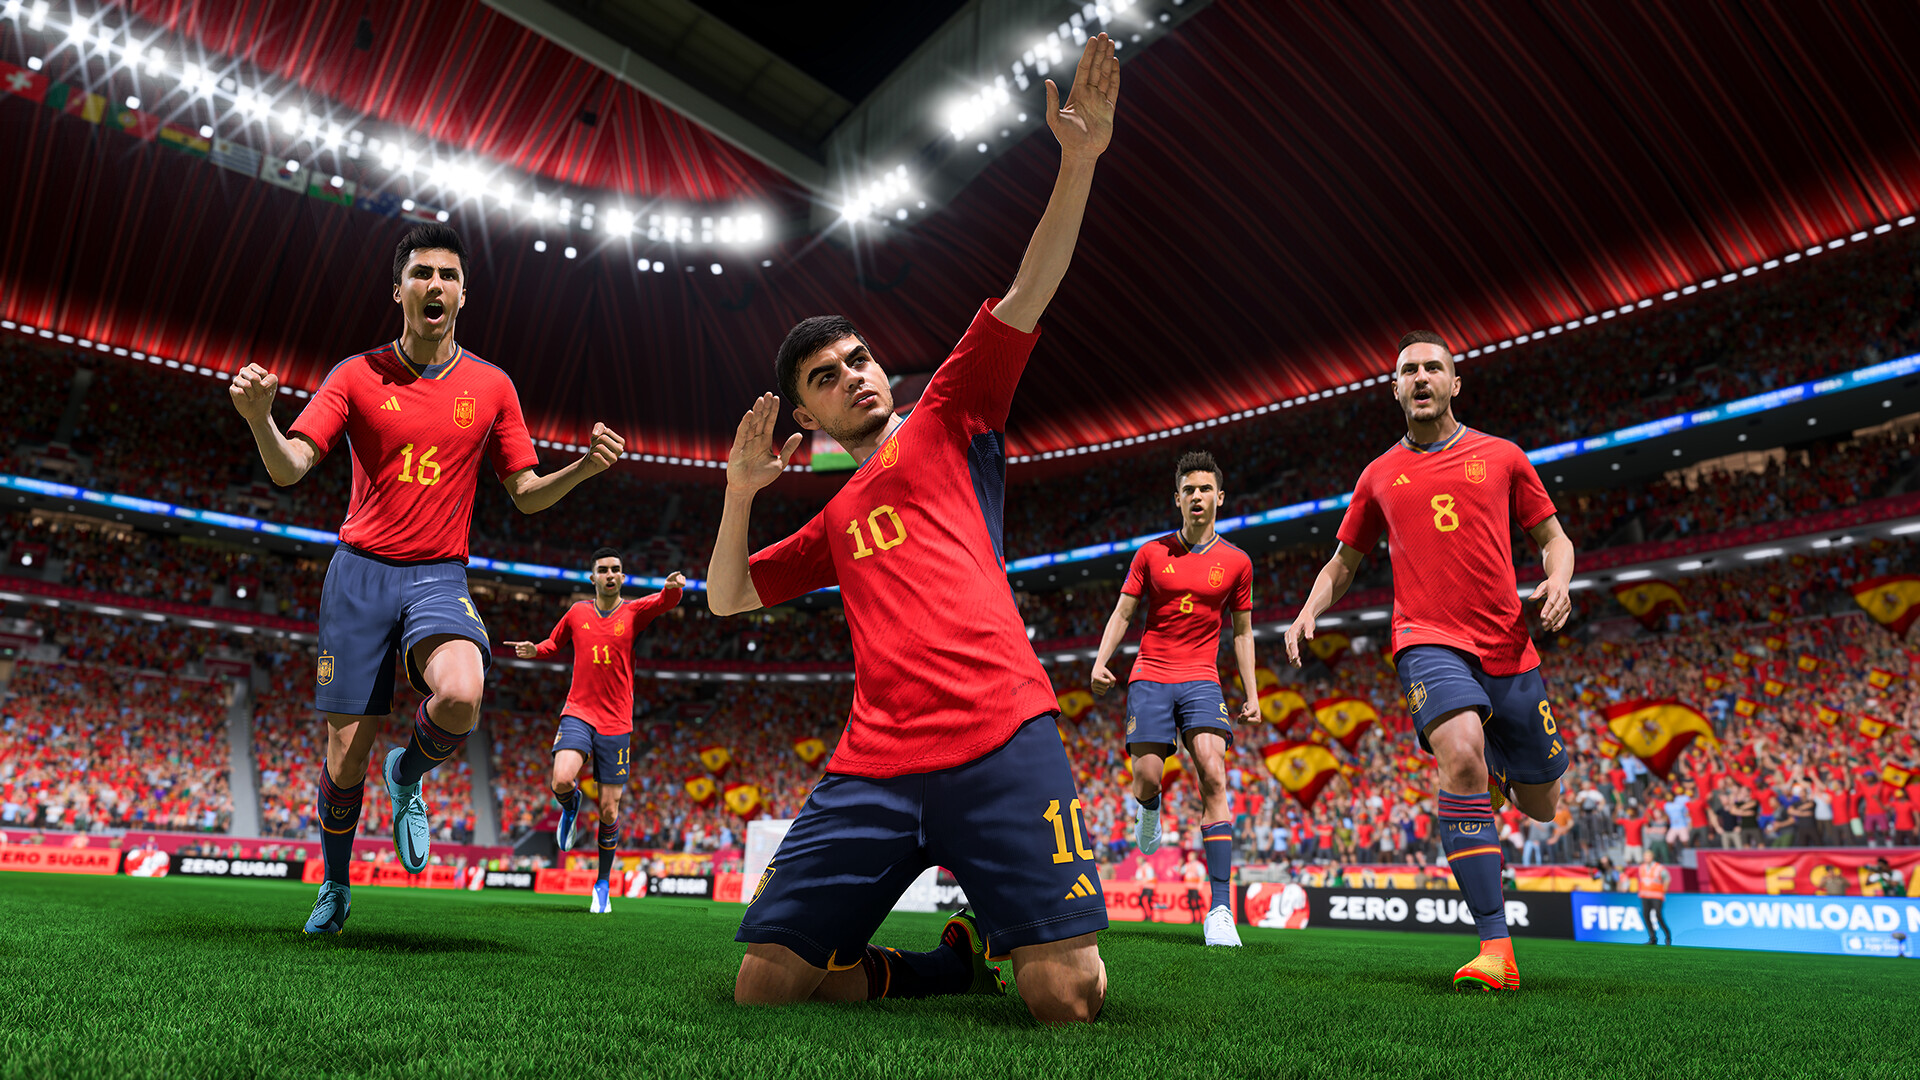 تصویر شاهکار از تیم ملی اسپانیا در فیفا 23 با کیفیت عالی